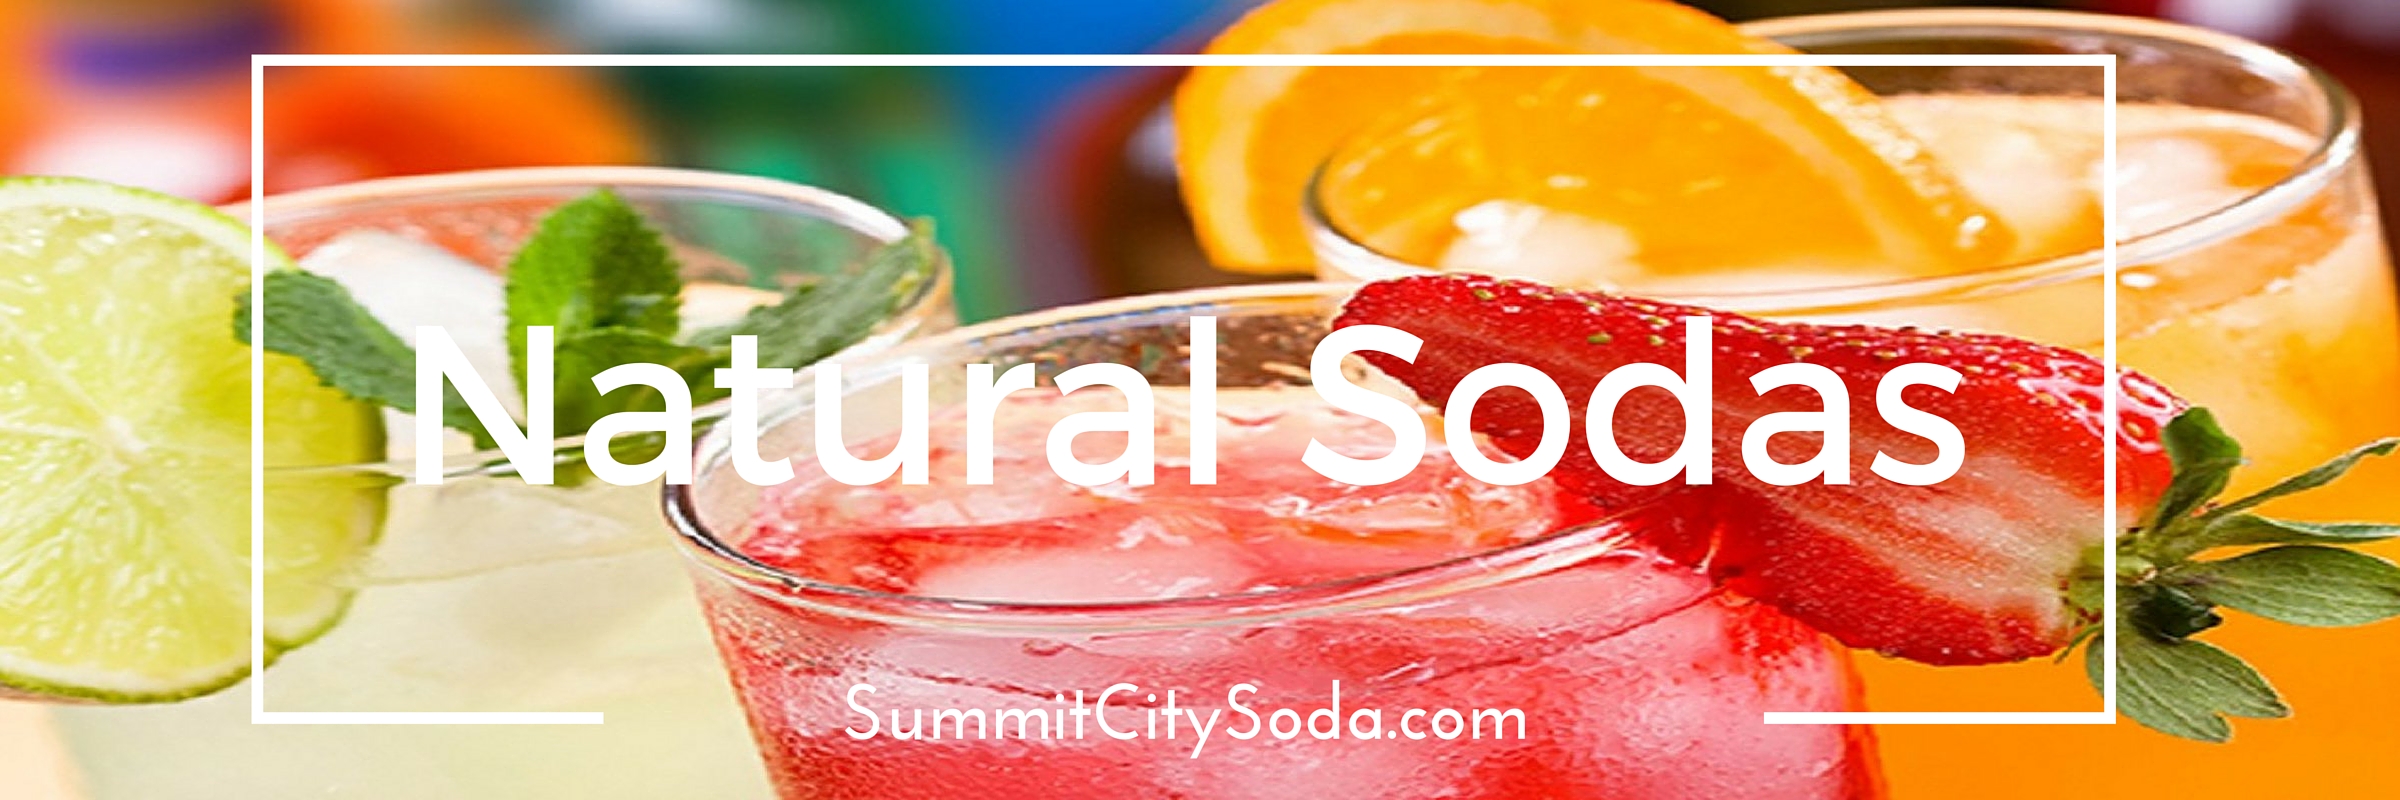 Fresh Natural Sodas at SummitCitySoda.com